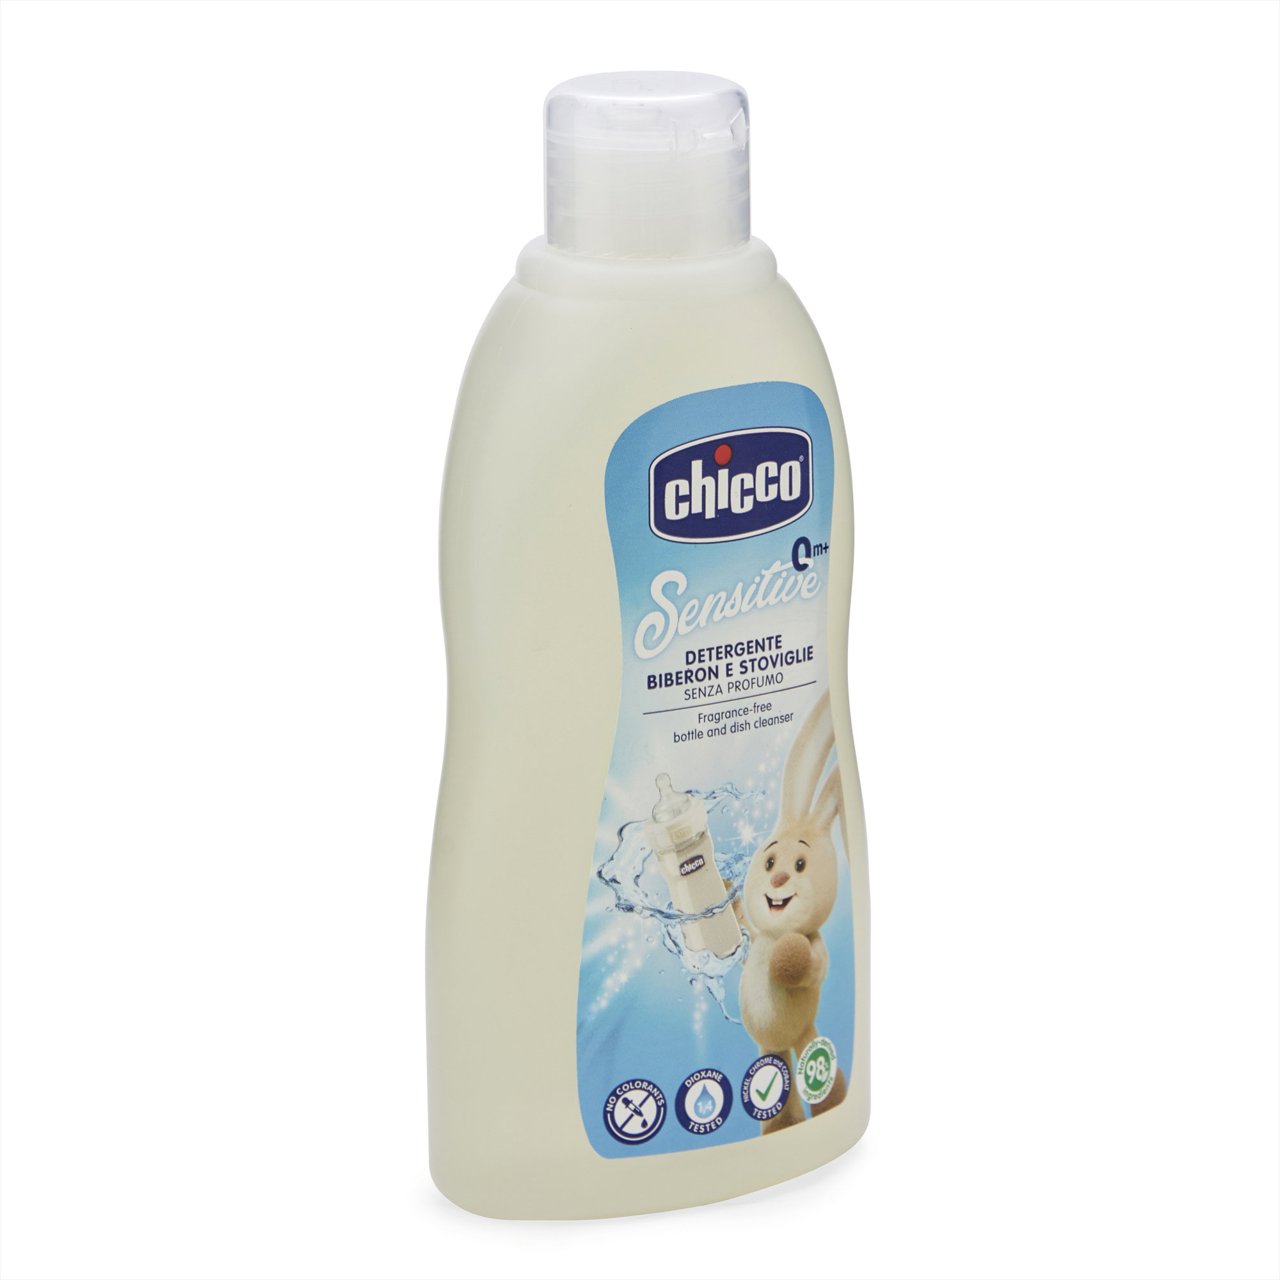 Detergente limpia biberones 300ml image number 4